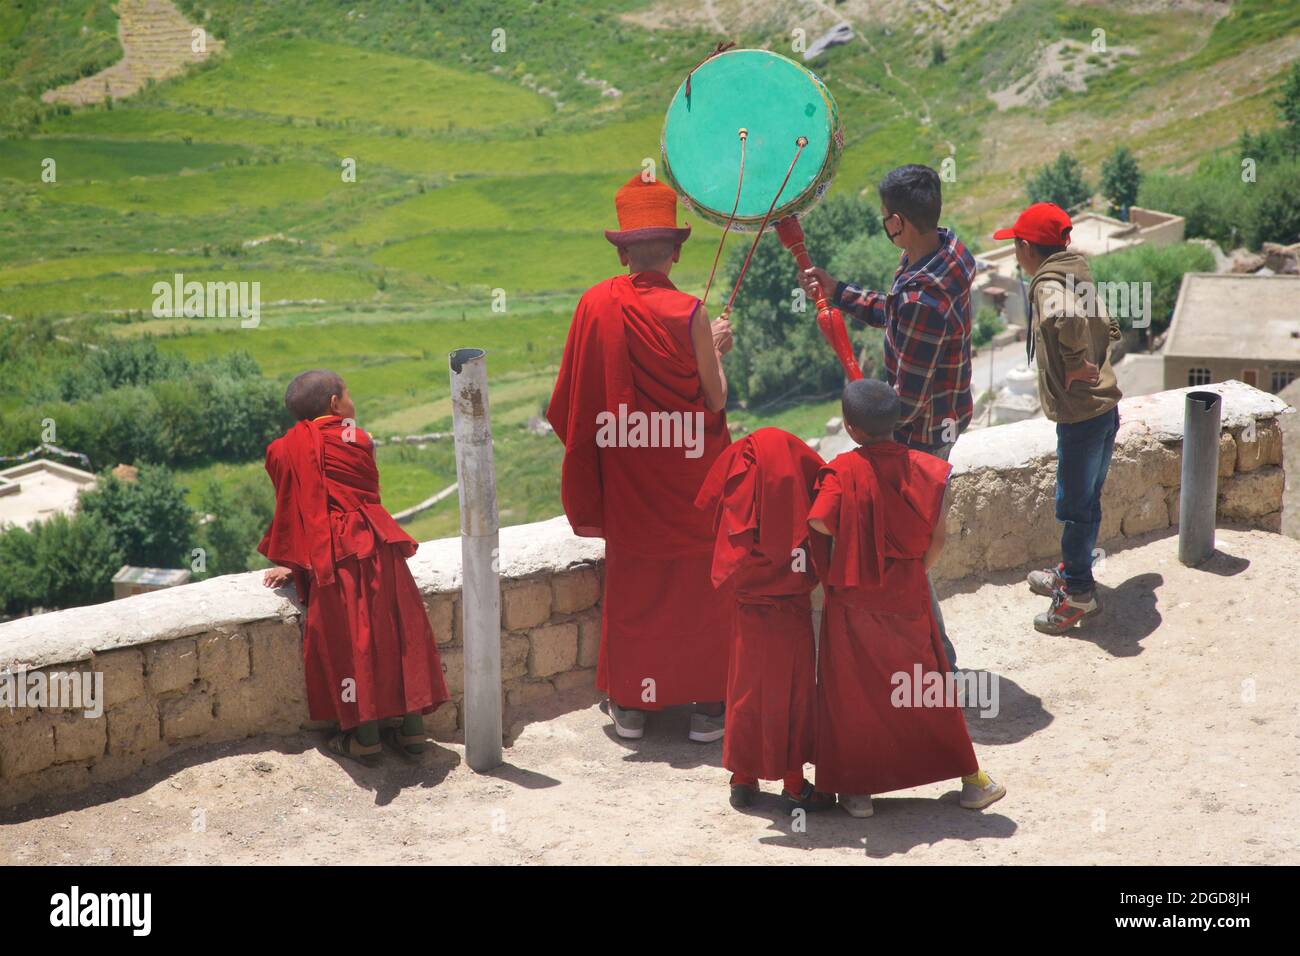 Monaci residenti con un tamburo buddista tibetano che annunciano l'inizio del festival Karsha Gustor a coloro che vivono nella valle sottostante. Monastero di Karsha, Foto Stock